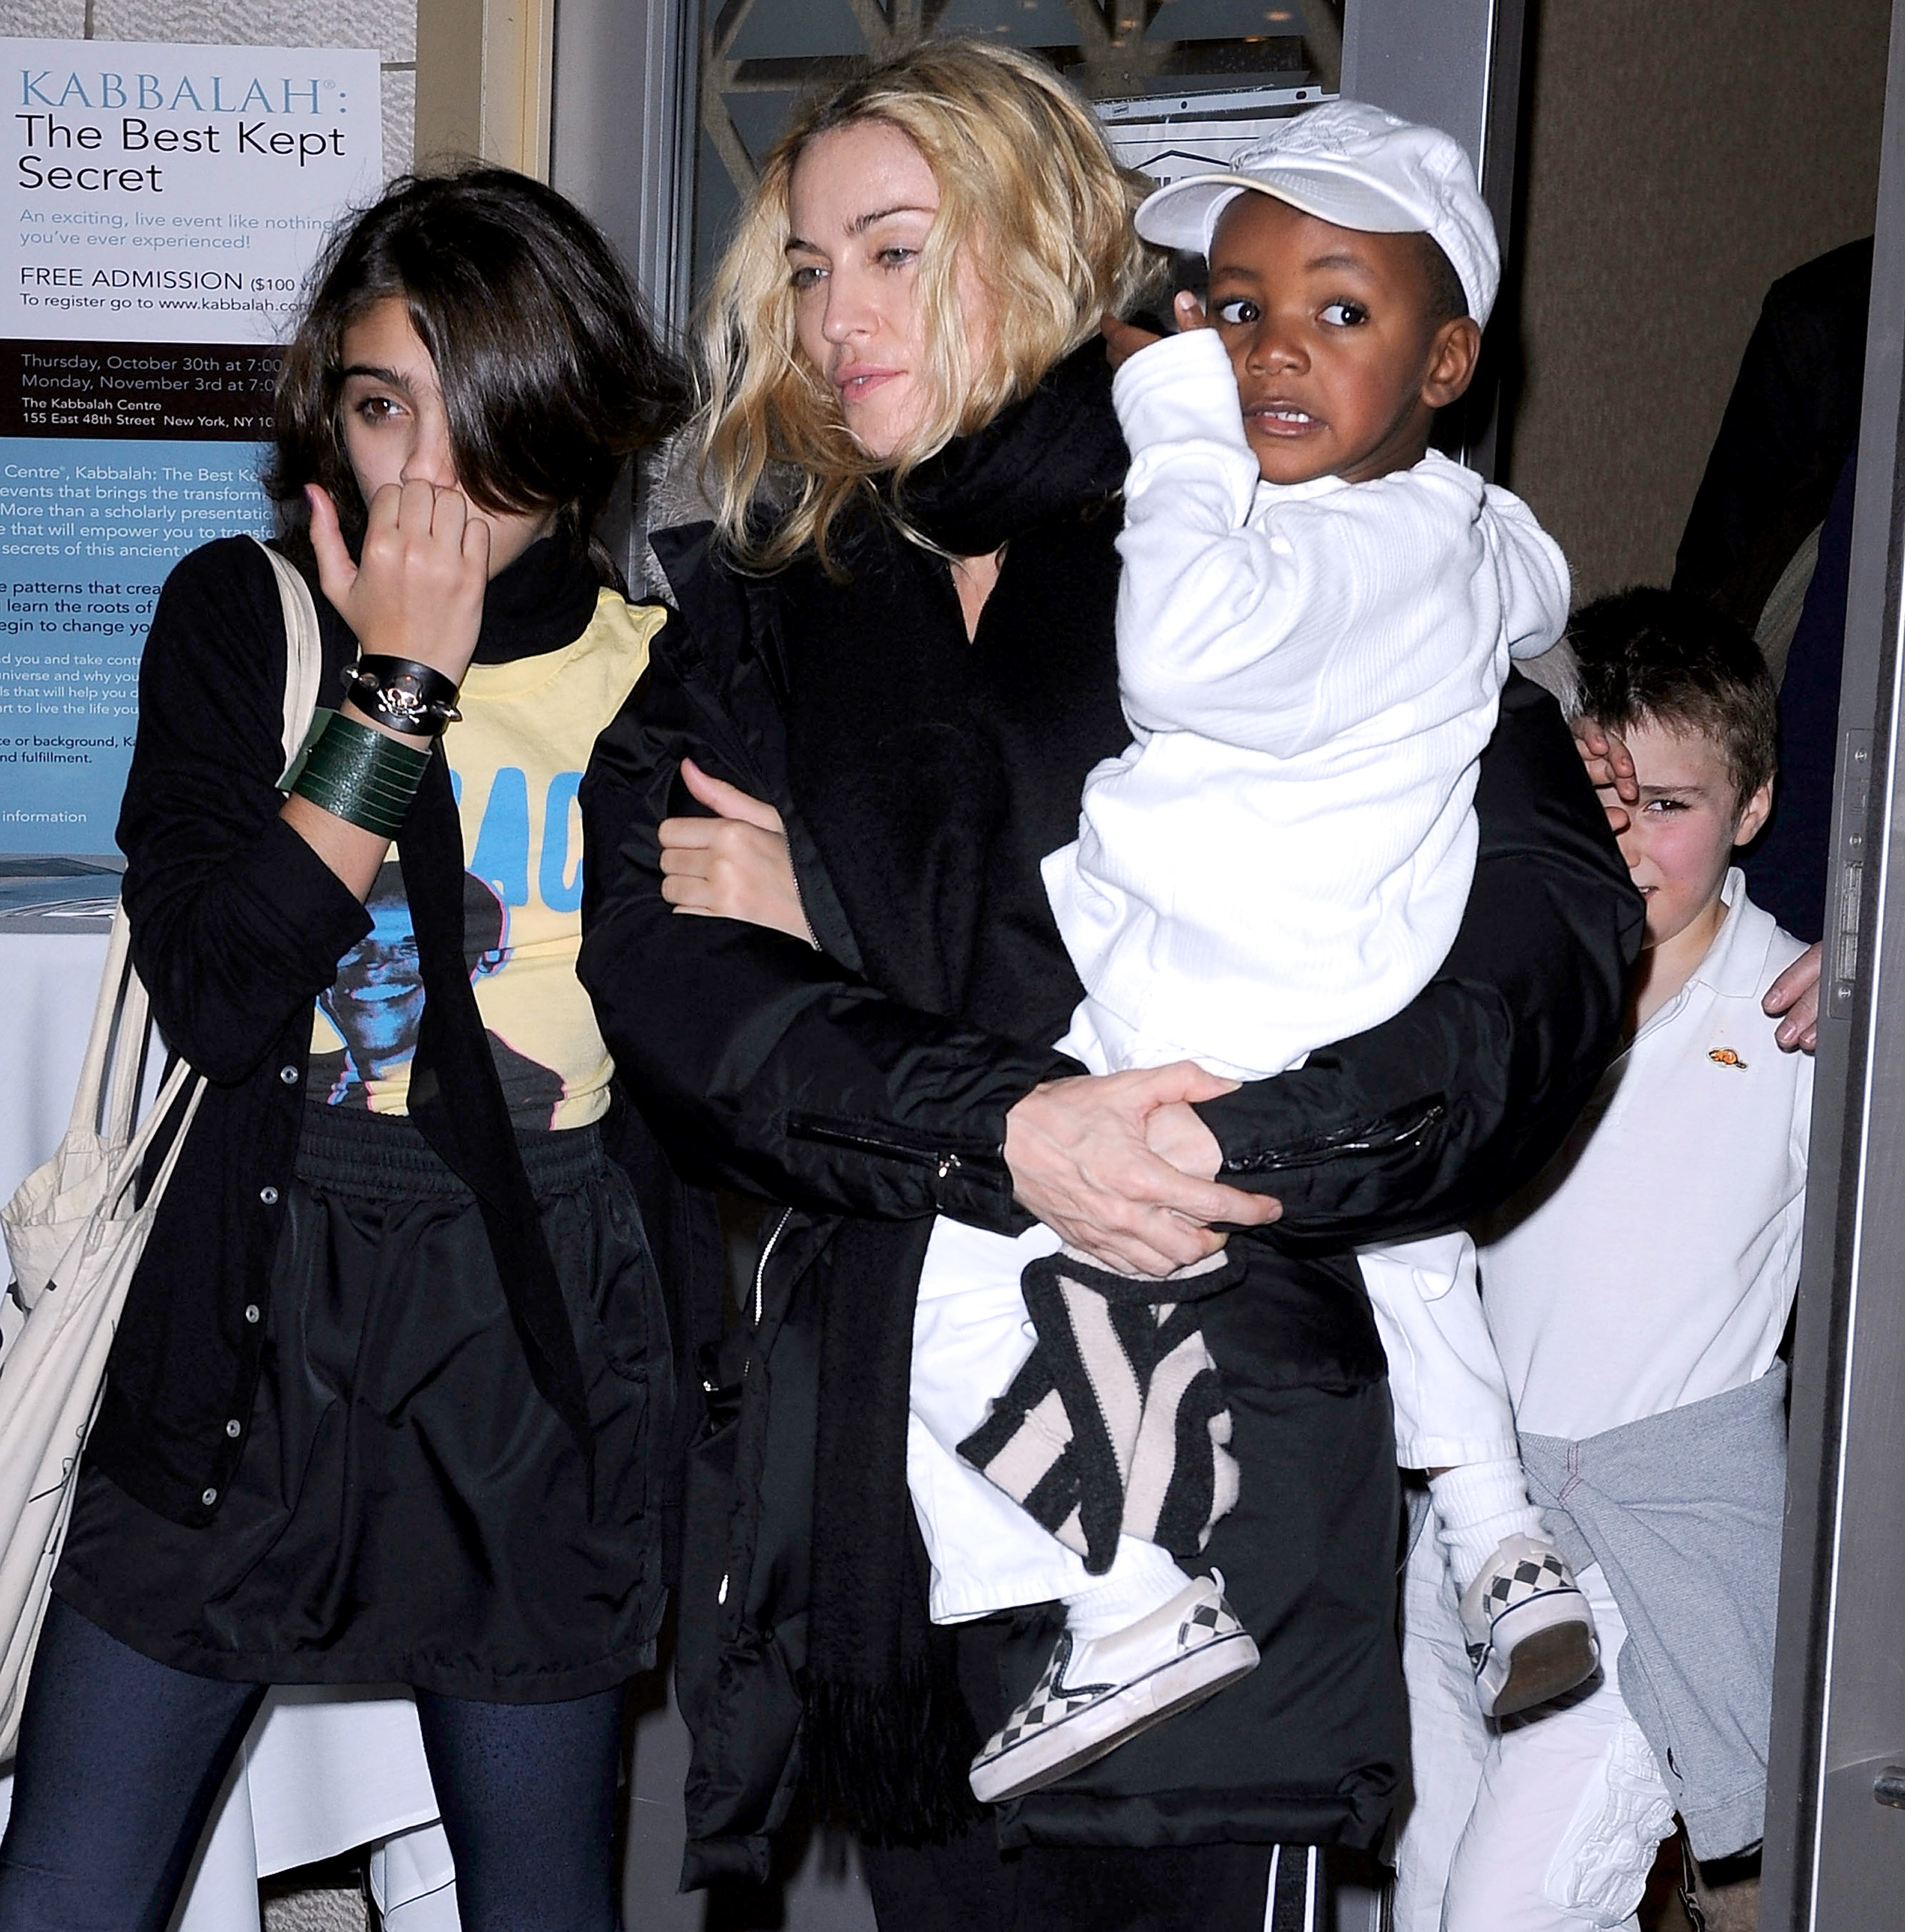 Madonna avec ses enfants Lourdes "Lola" Leon, David Banda, et Rocco Ritchie le 24 octobre 2008 à New York | Source : Getty Images